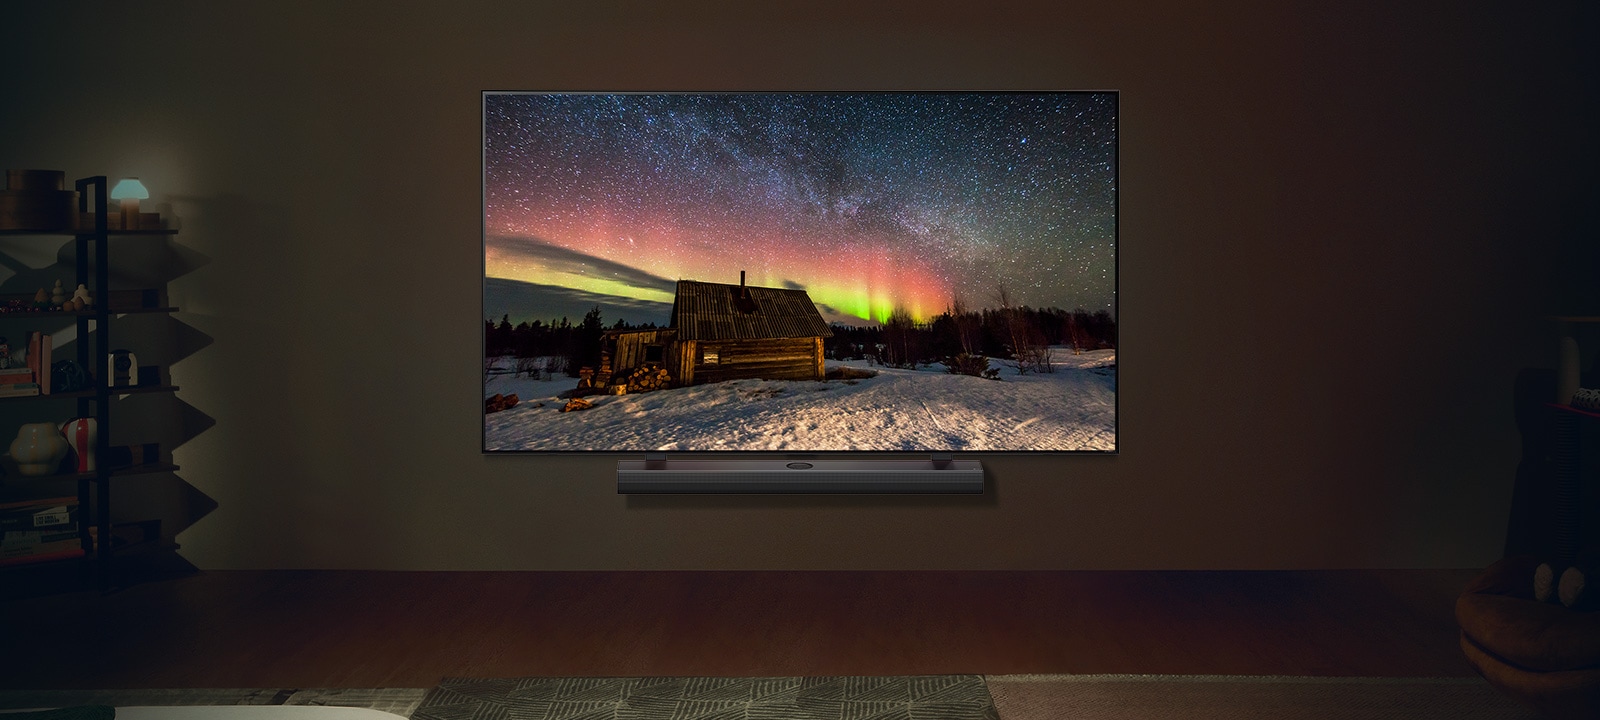 LG TV dan LG Soundbar di ruang tamu modern di malam hari. Gambar layar aurora borealis ditampilkan dengan tingkat kecerahan ideal.